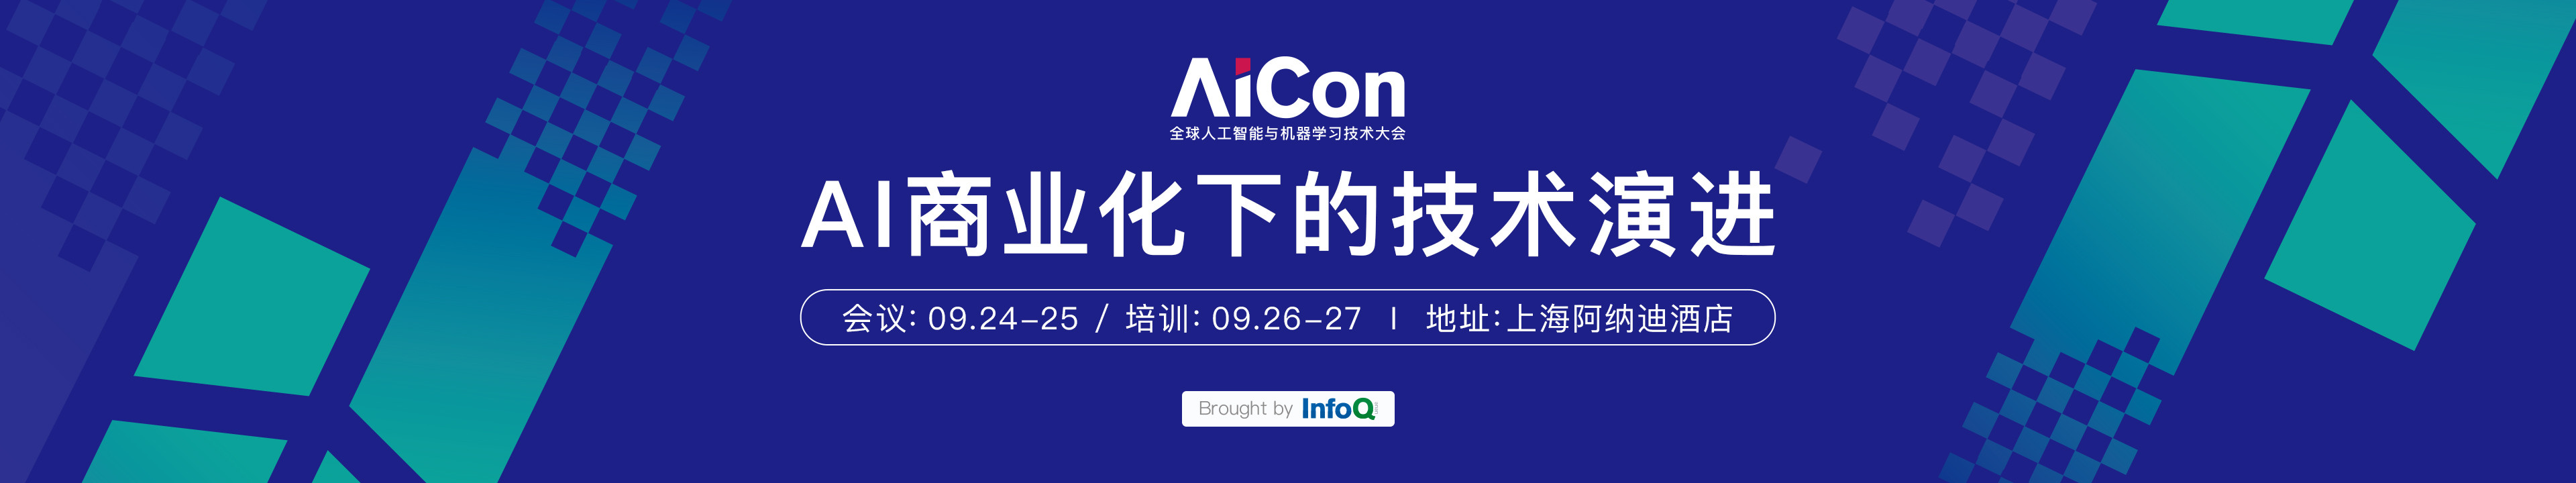 AICon2020全球人工智能与机器学习大会